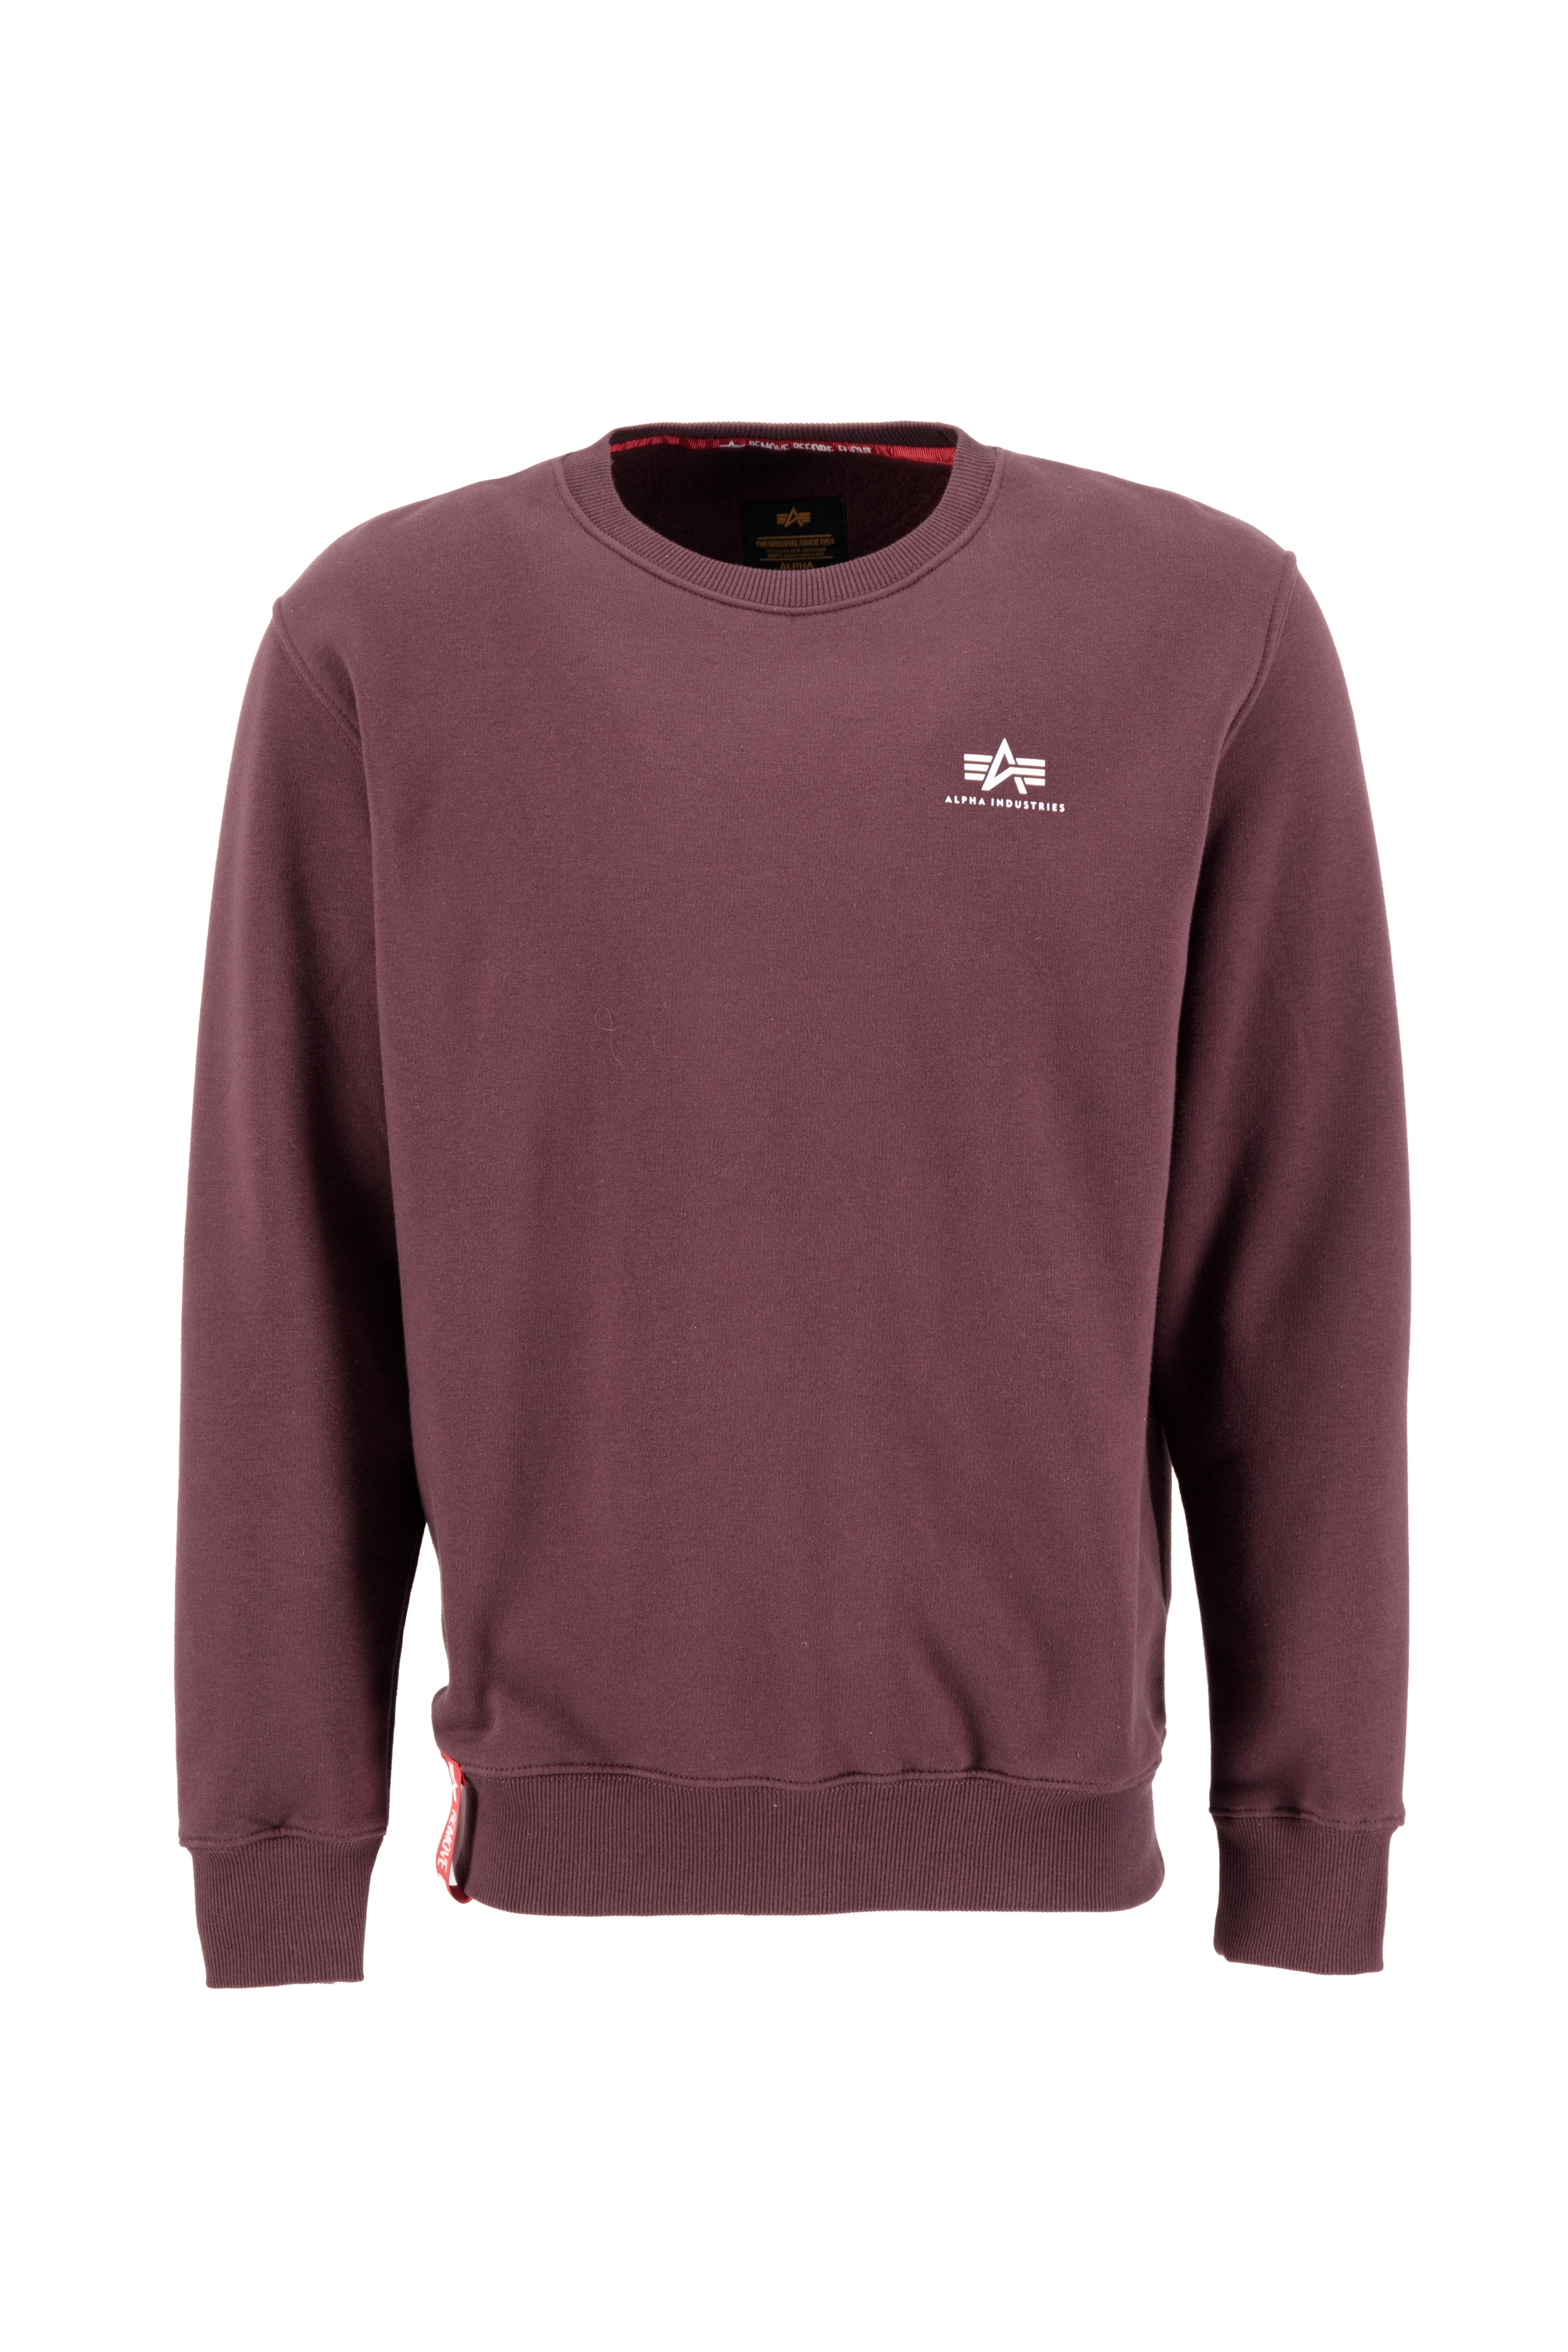 Logo« Industries ▷ BAUR Alpha »Alpha Industries für Basic Sweater Men Sweater | Small - Sweatshirts